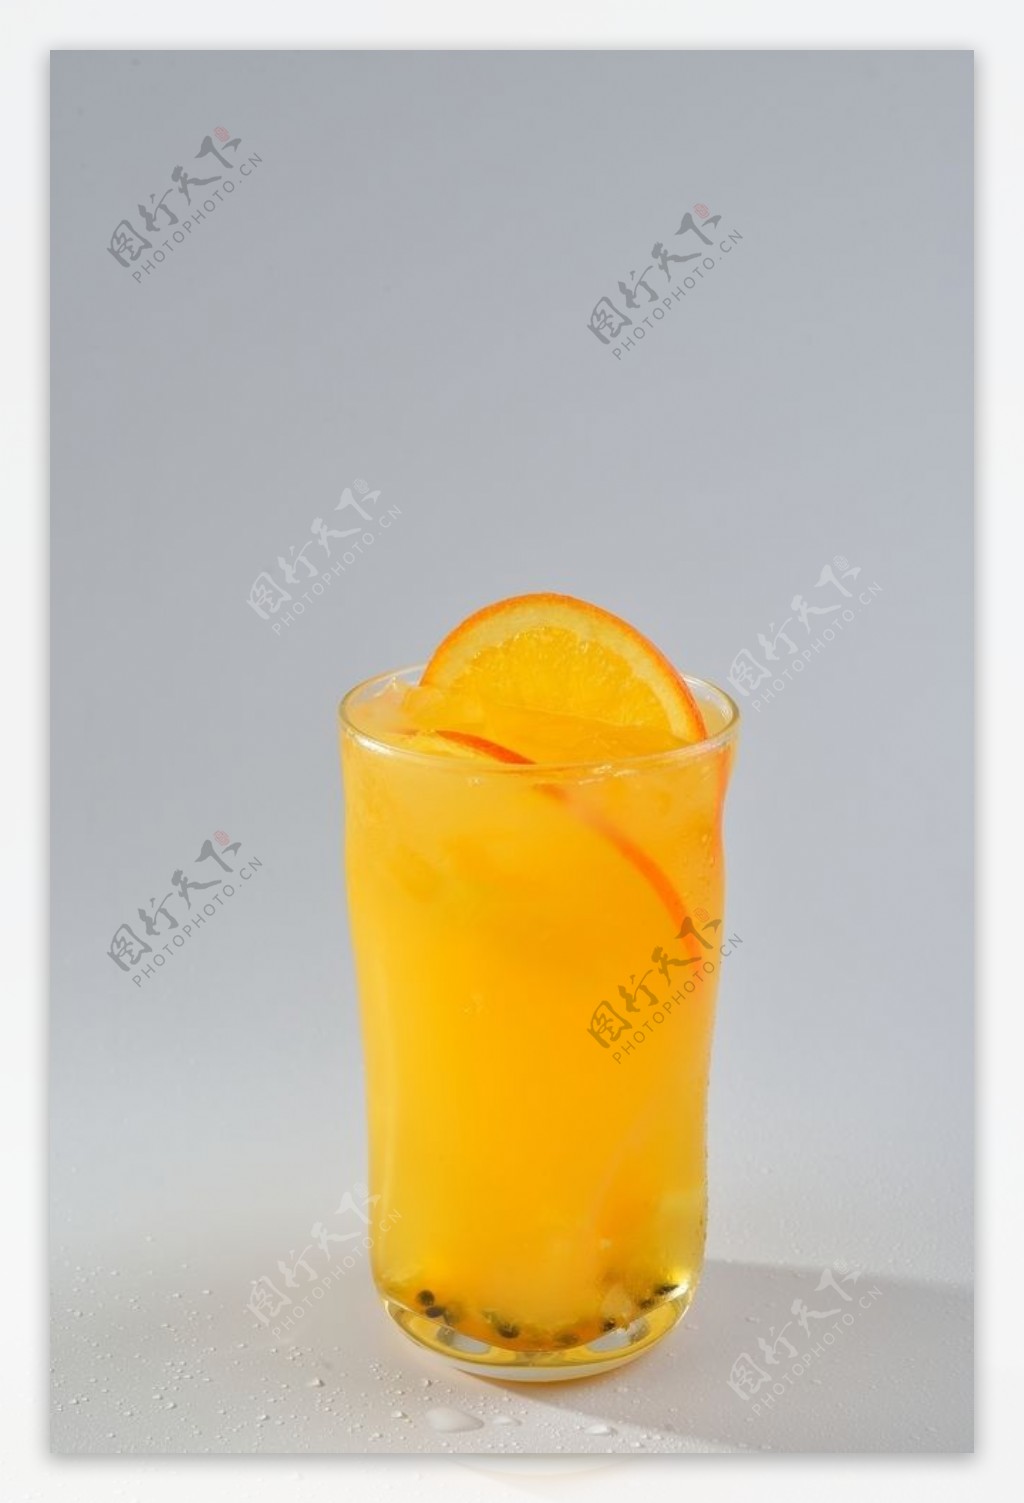 玻璃杯里的橙汁百香果